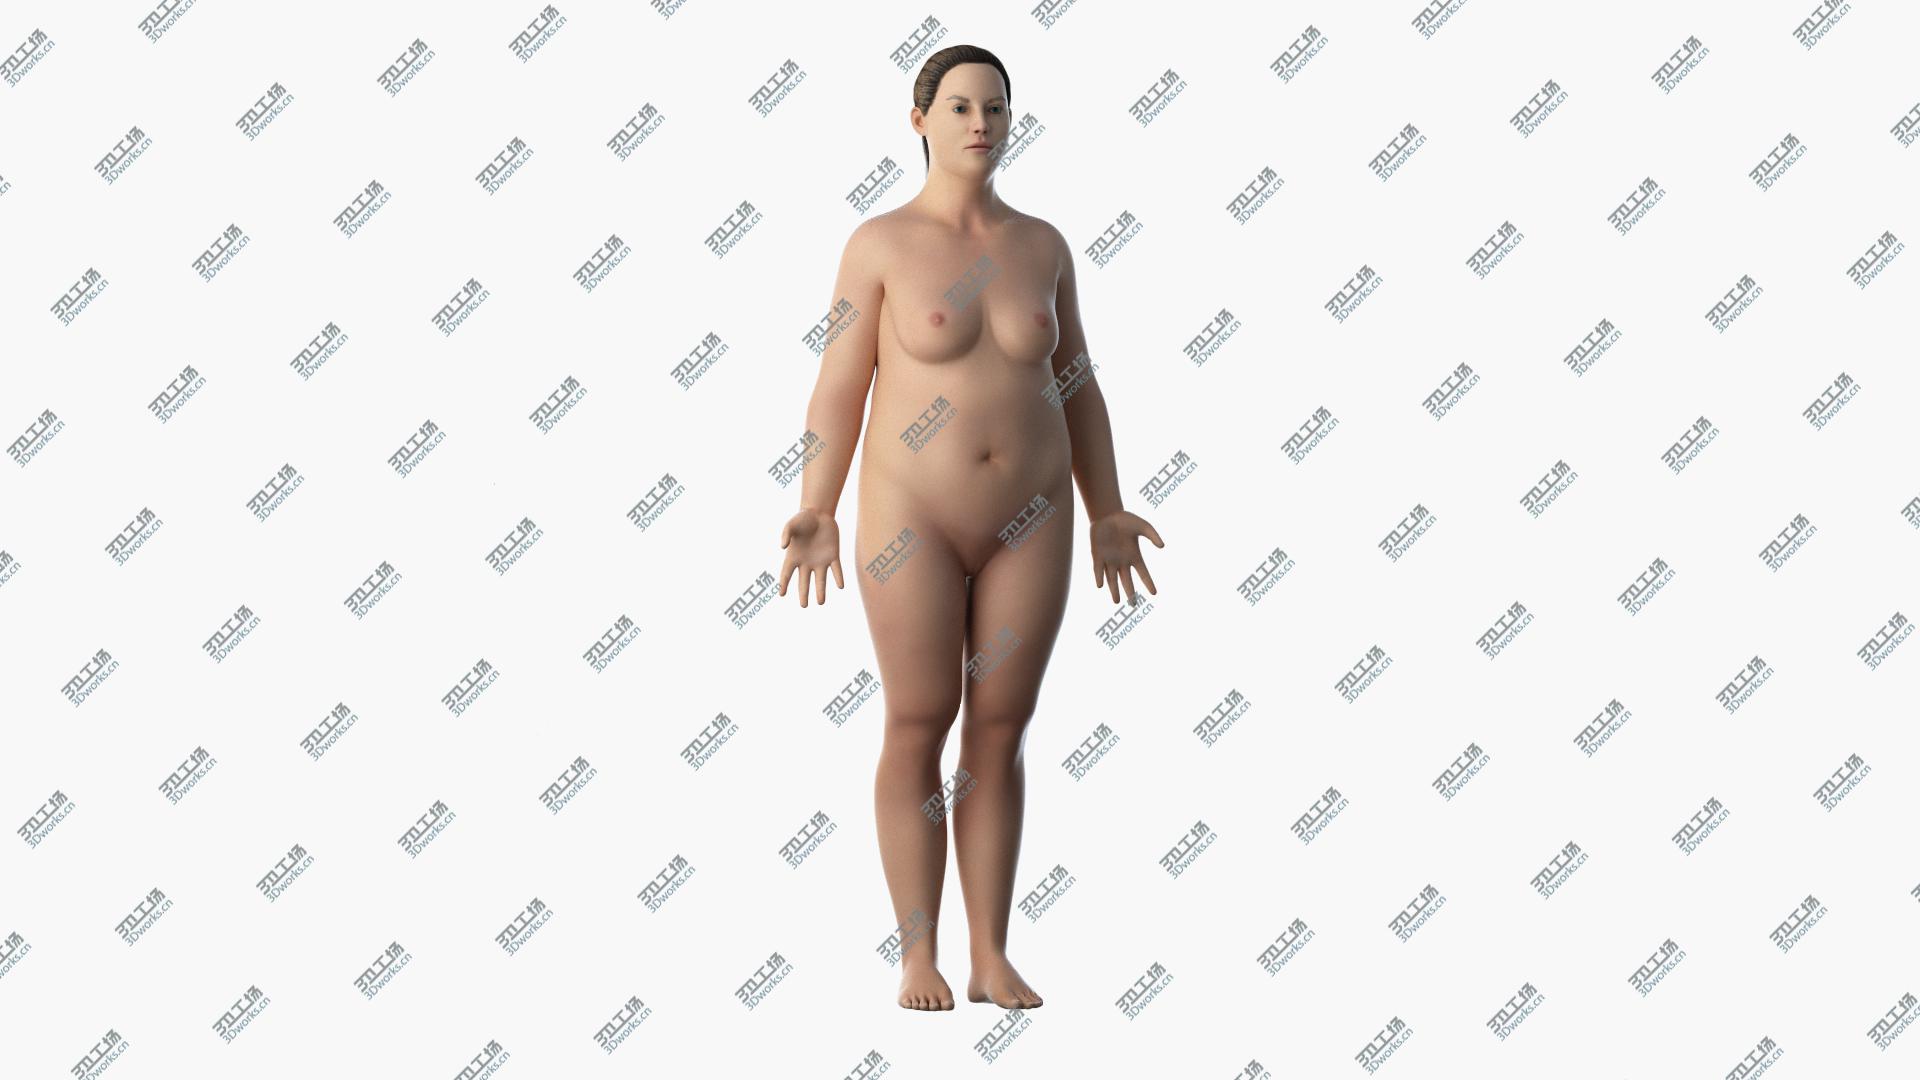 images/goods_img/20210313/3D Obese Female Skin, Skeleton And Vascular System Rigged model/5.jpg